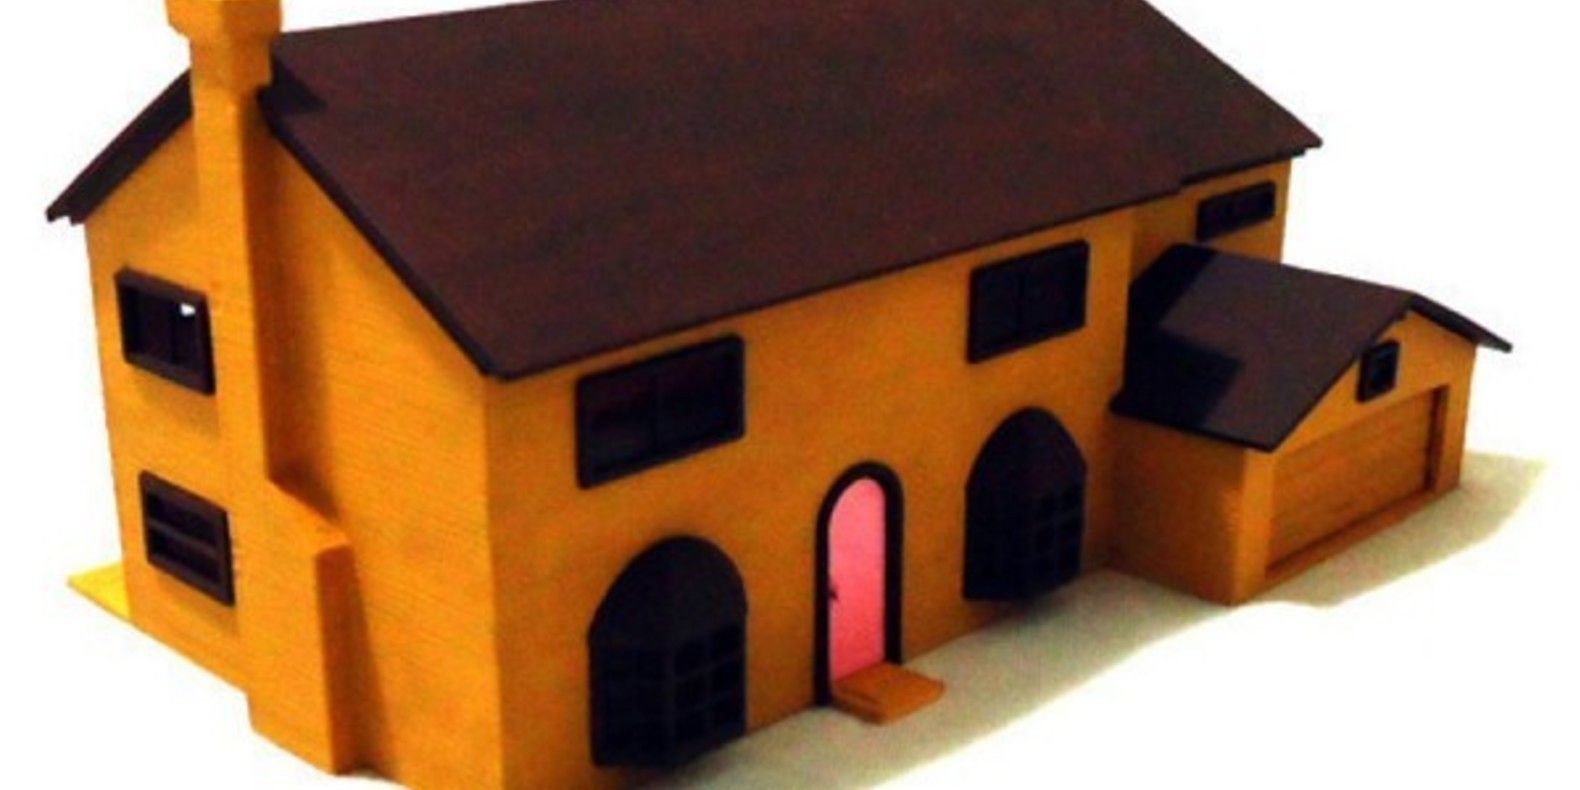 3D Printed Simpson House Cults 2 maison des Simpson